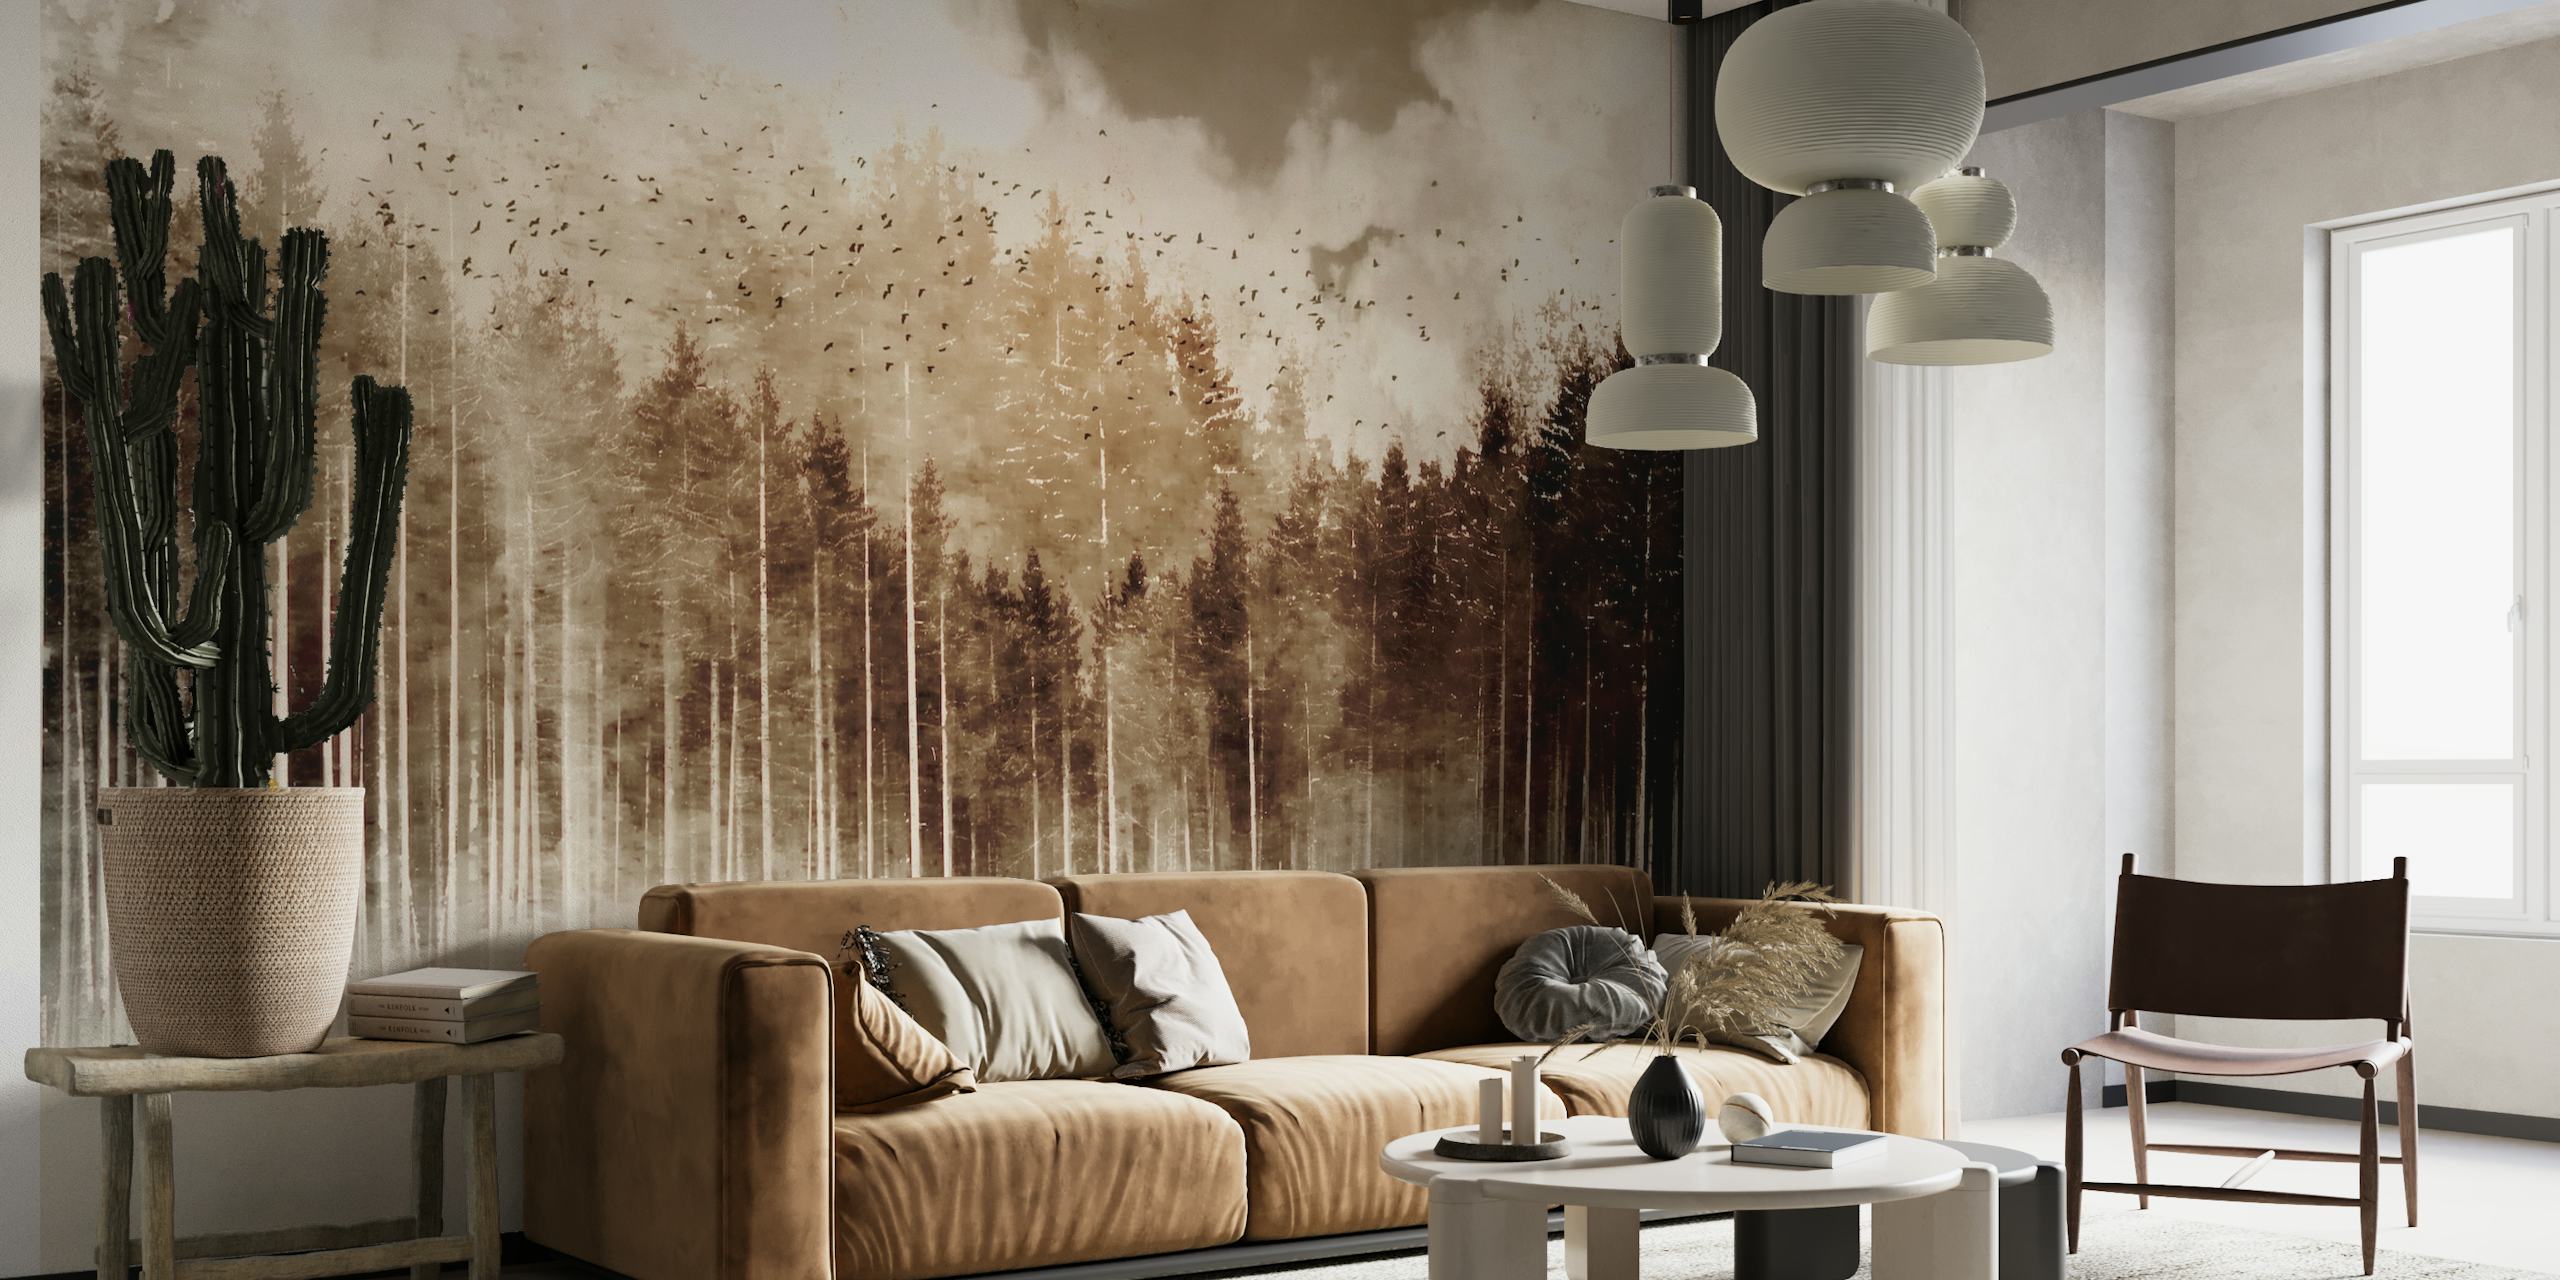 Mural de bosque misterioso en tonos sepia con densos árboles y niebla